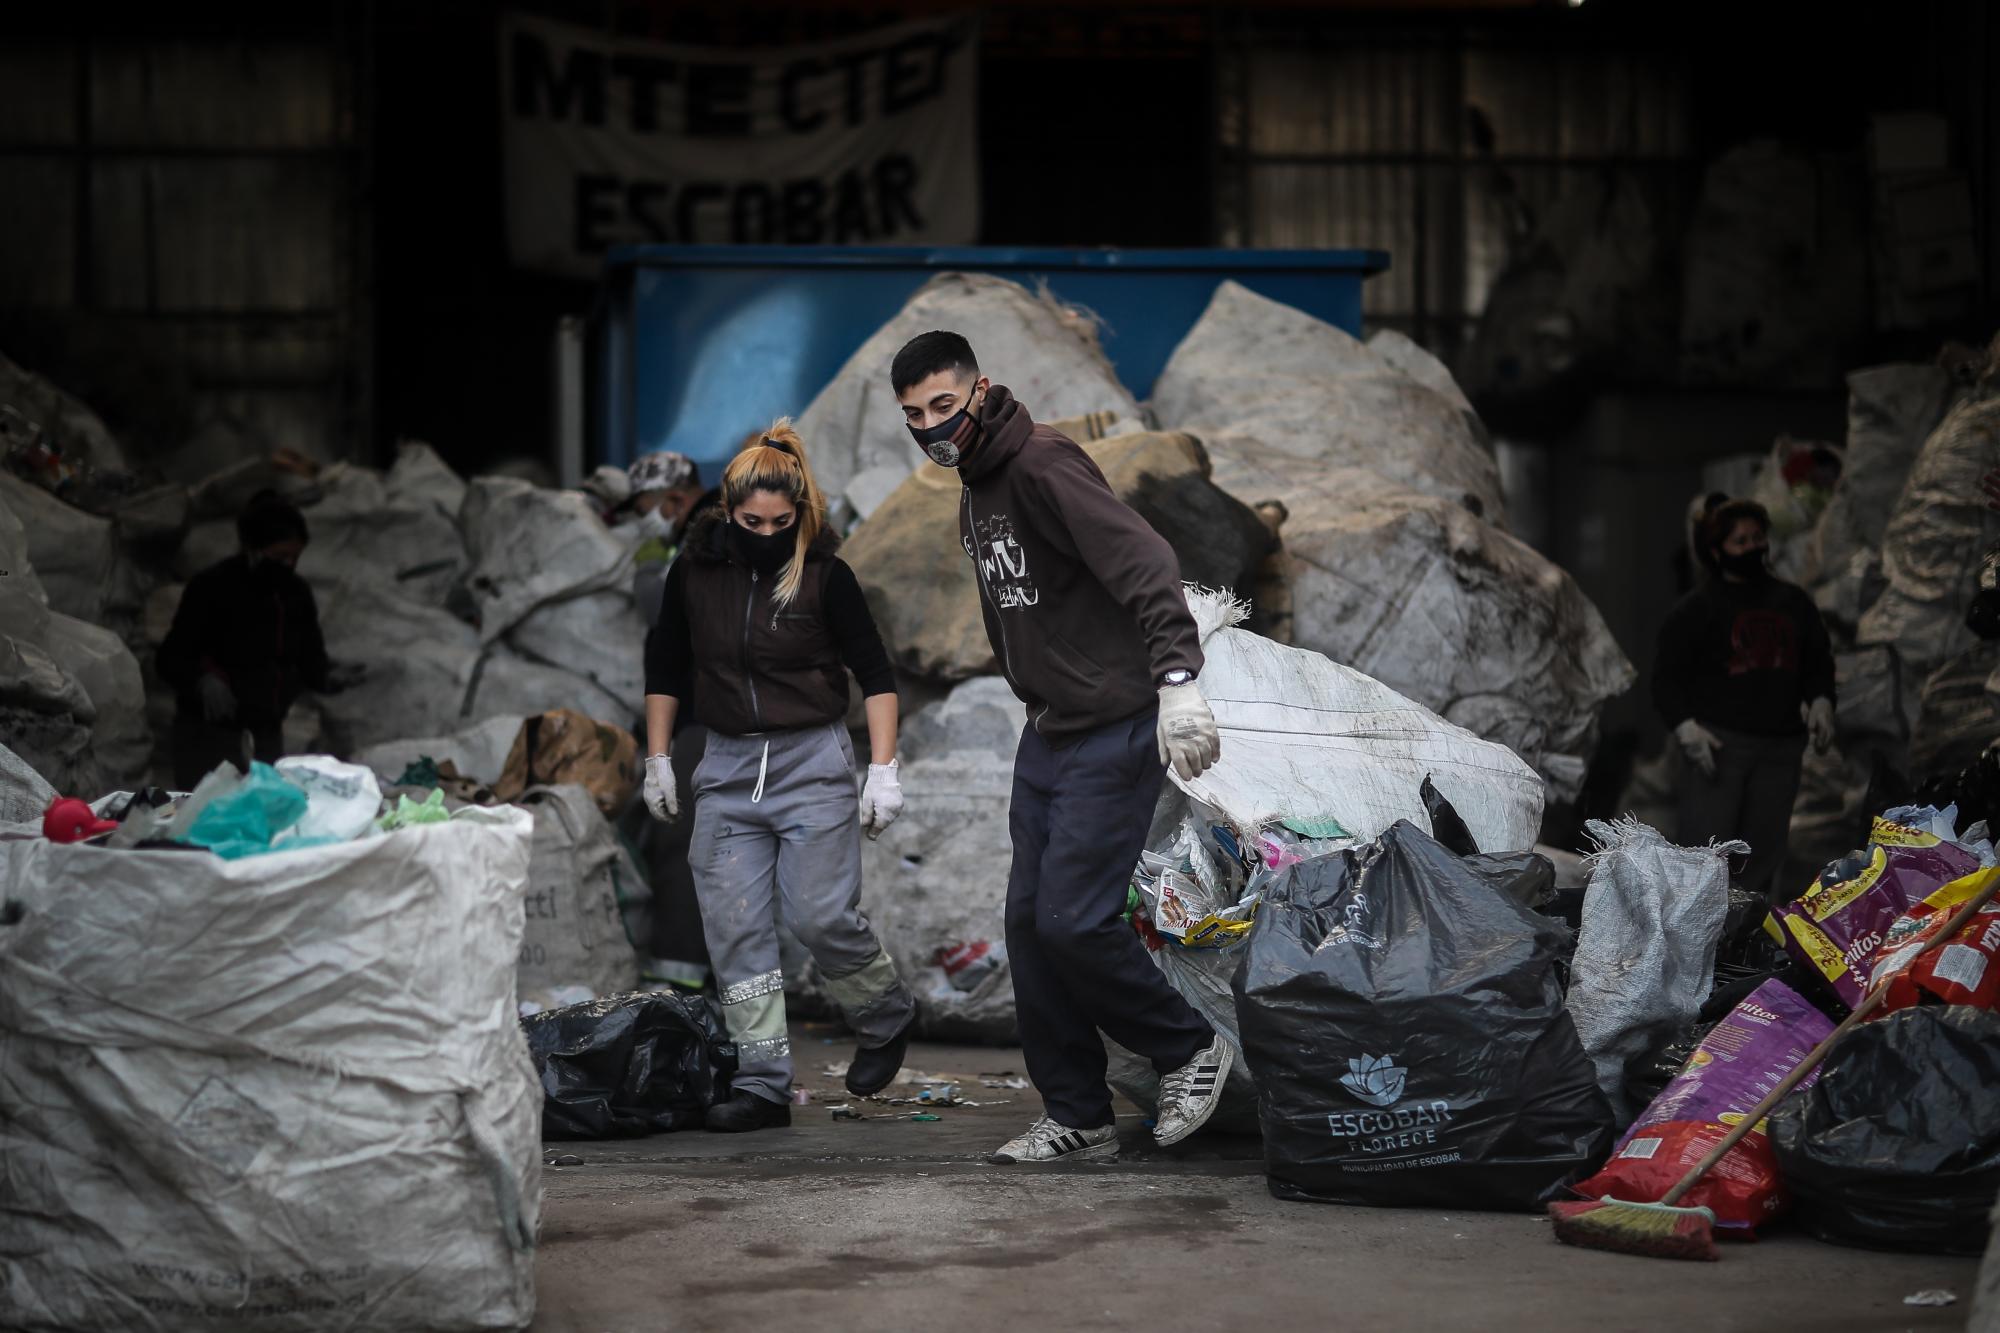 Dos recicladores, mejor conocidos como cartoneros cumplen su faena en el centro de la cooperativa 18 de Abril, en Escobar, Buenos Aires. (EFE/ Juan Ignacio Roncoroni)